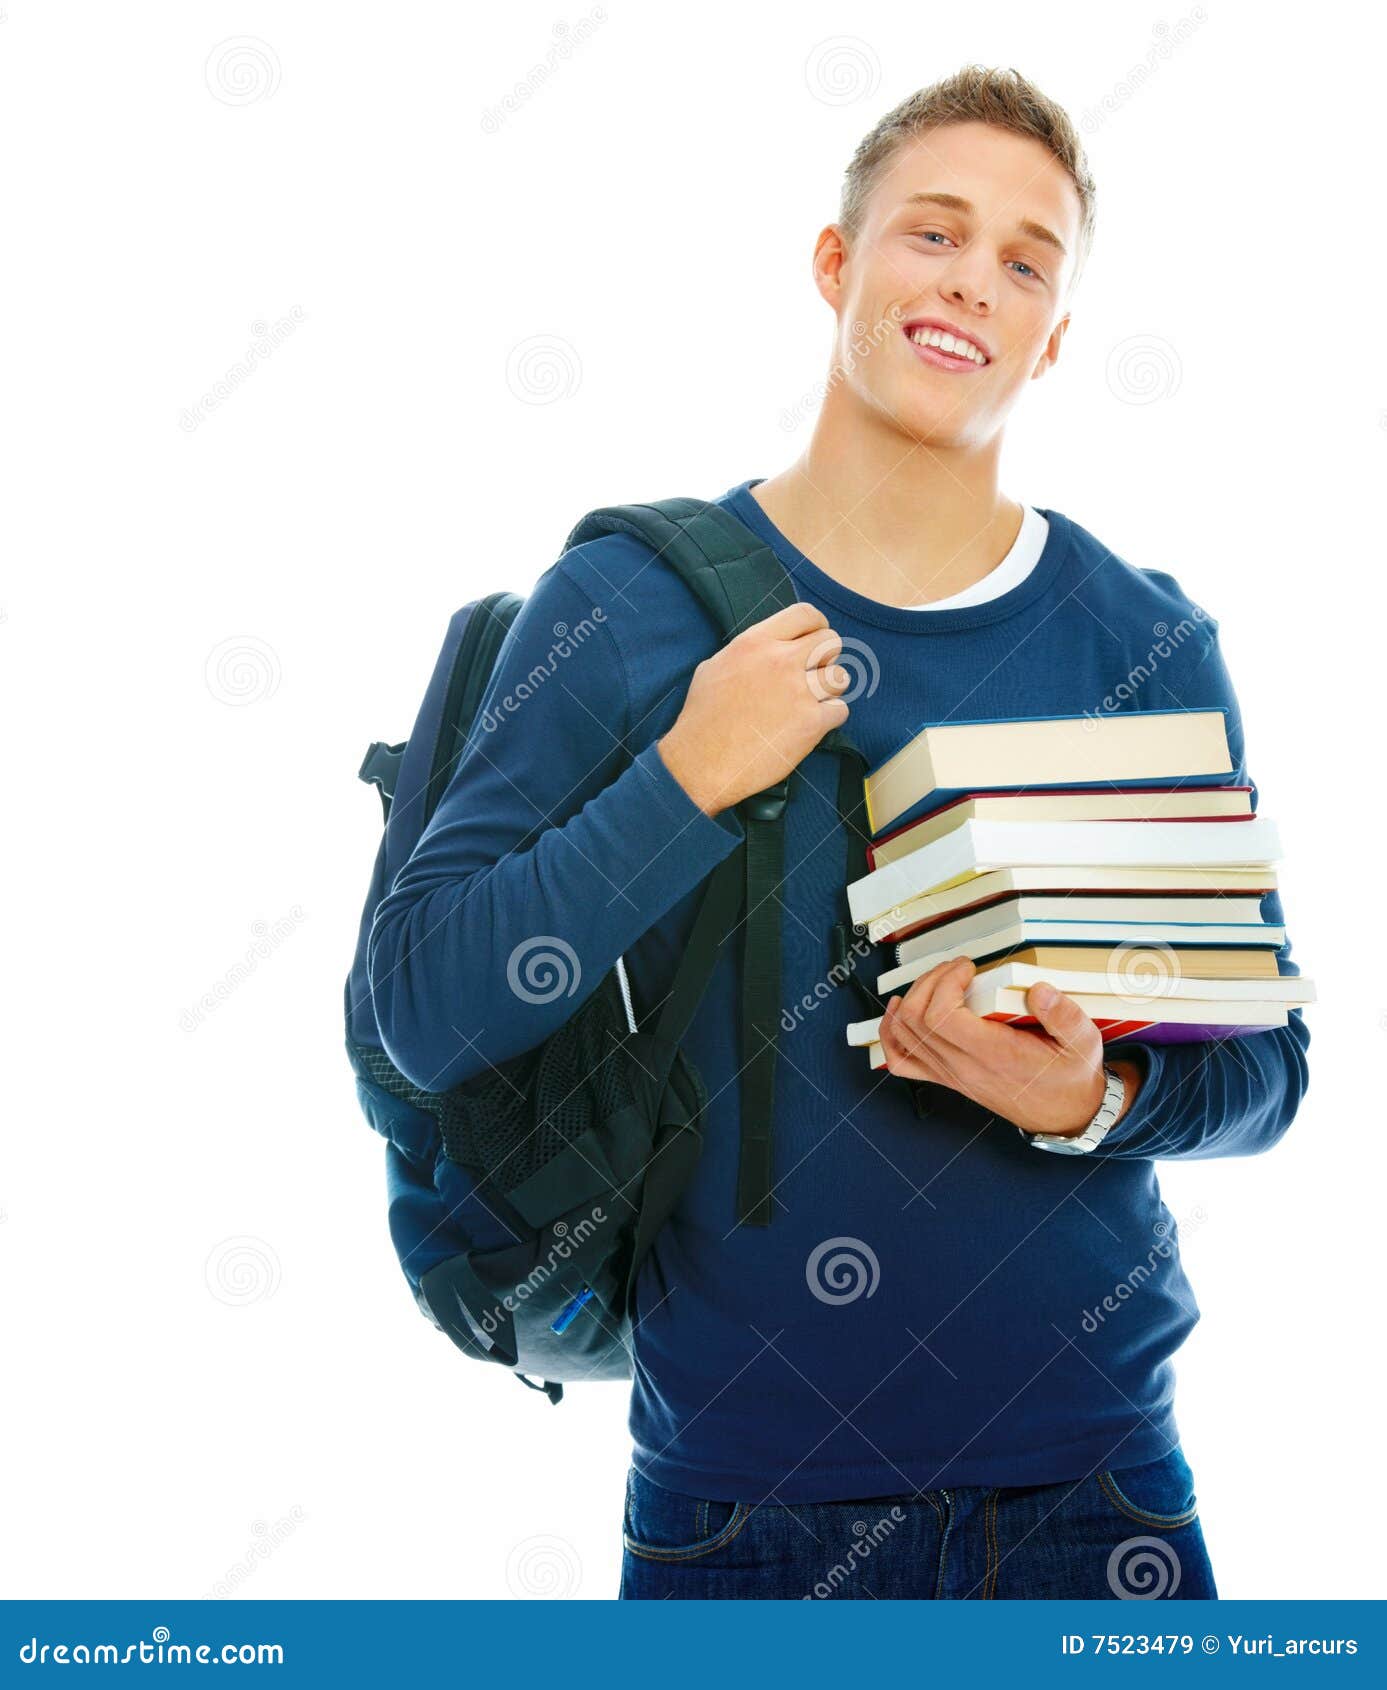 Читая учебники ребята готовились. Книга человек. Человек студент. Парень студент. Студенты с книгами на белом фоне.